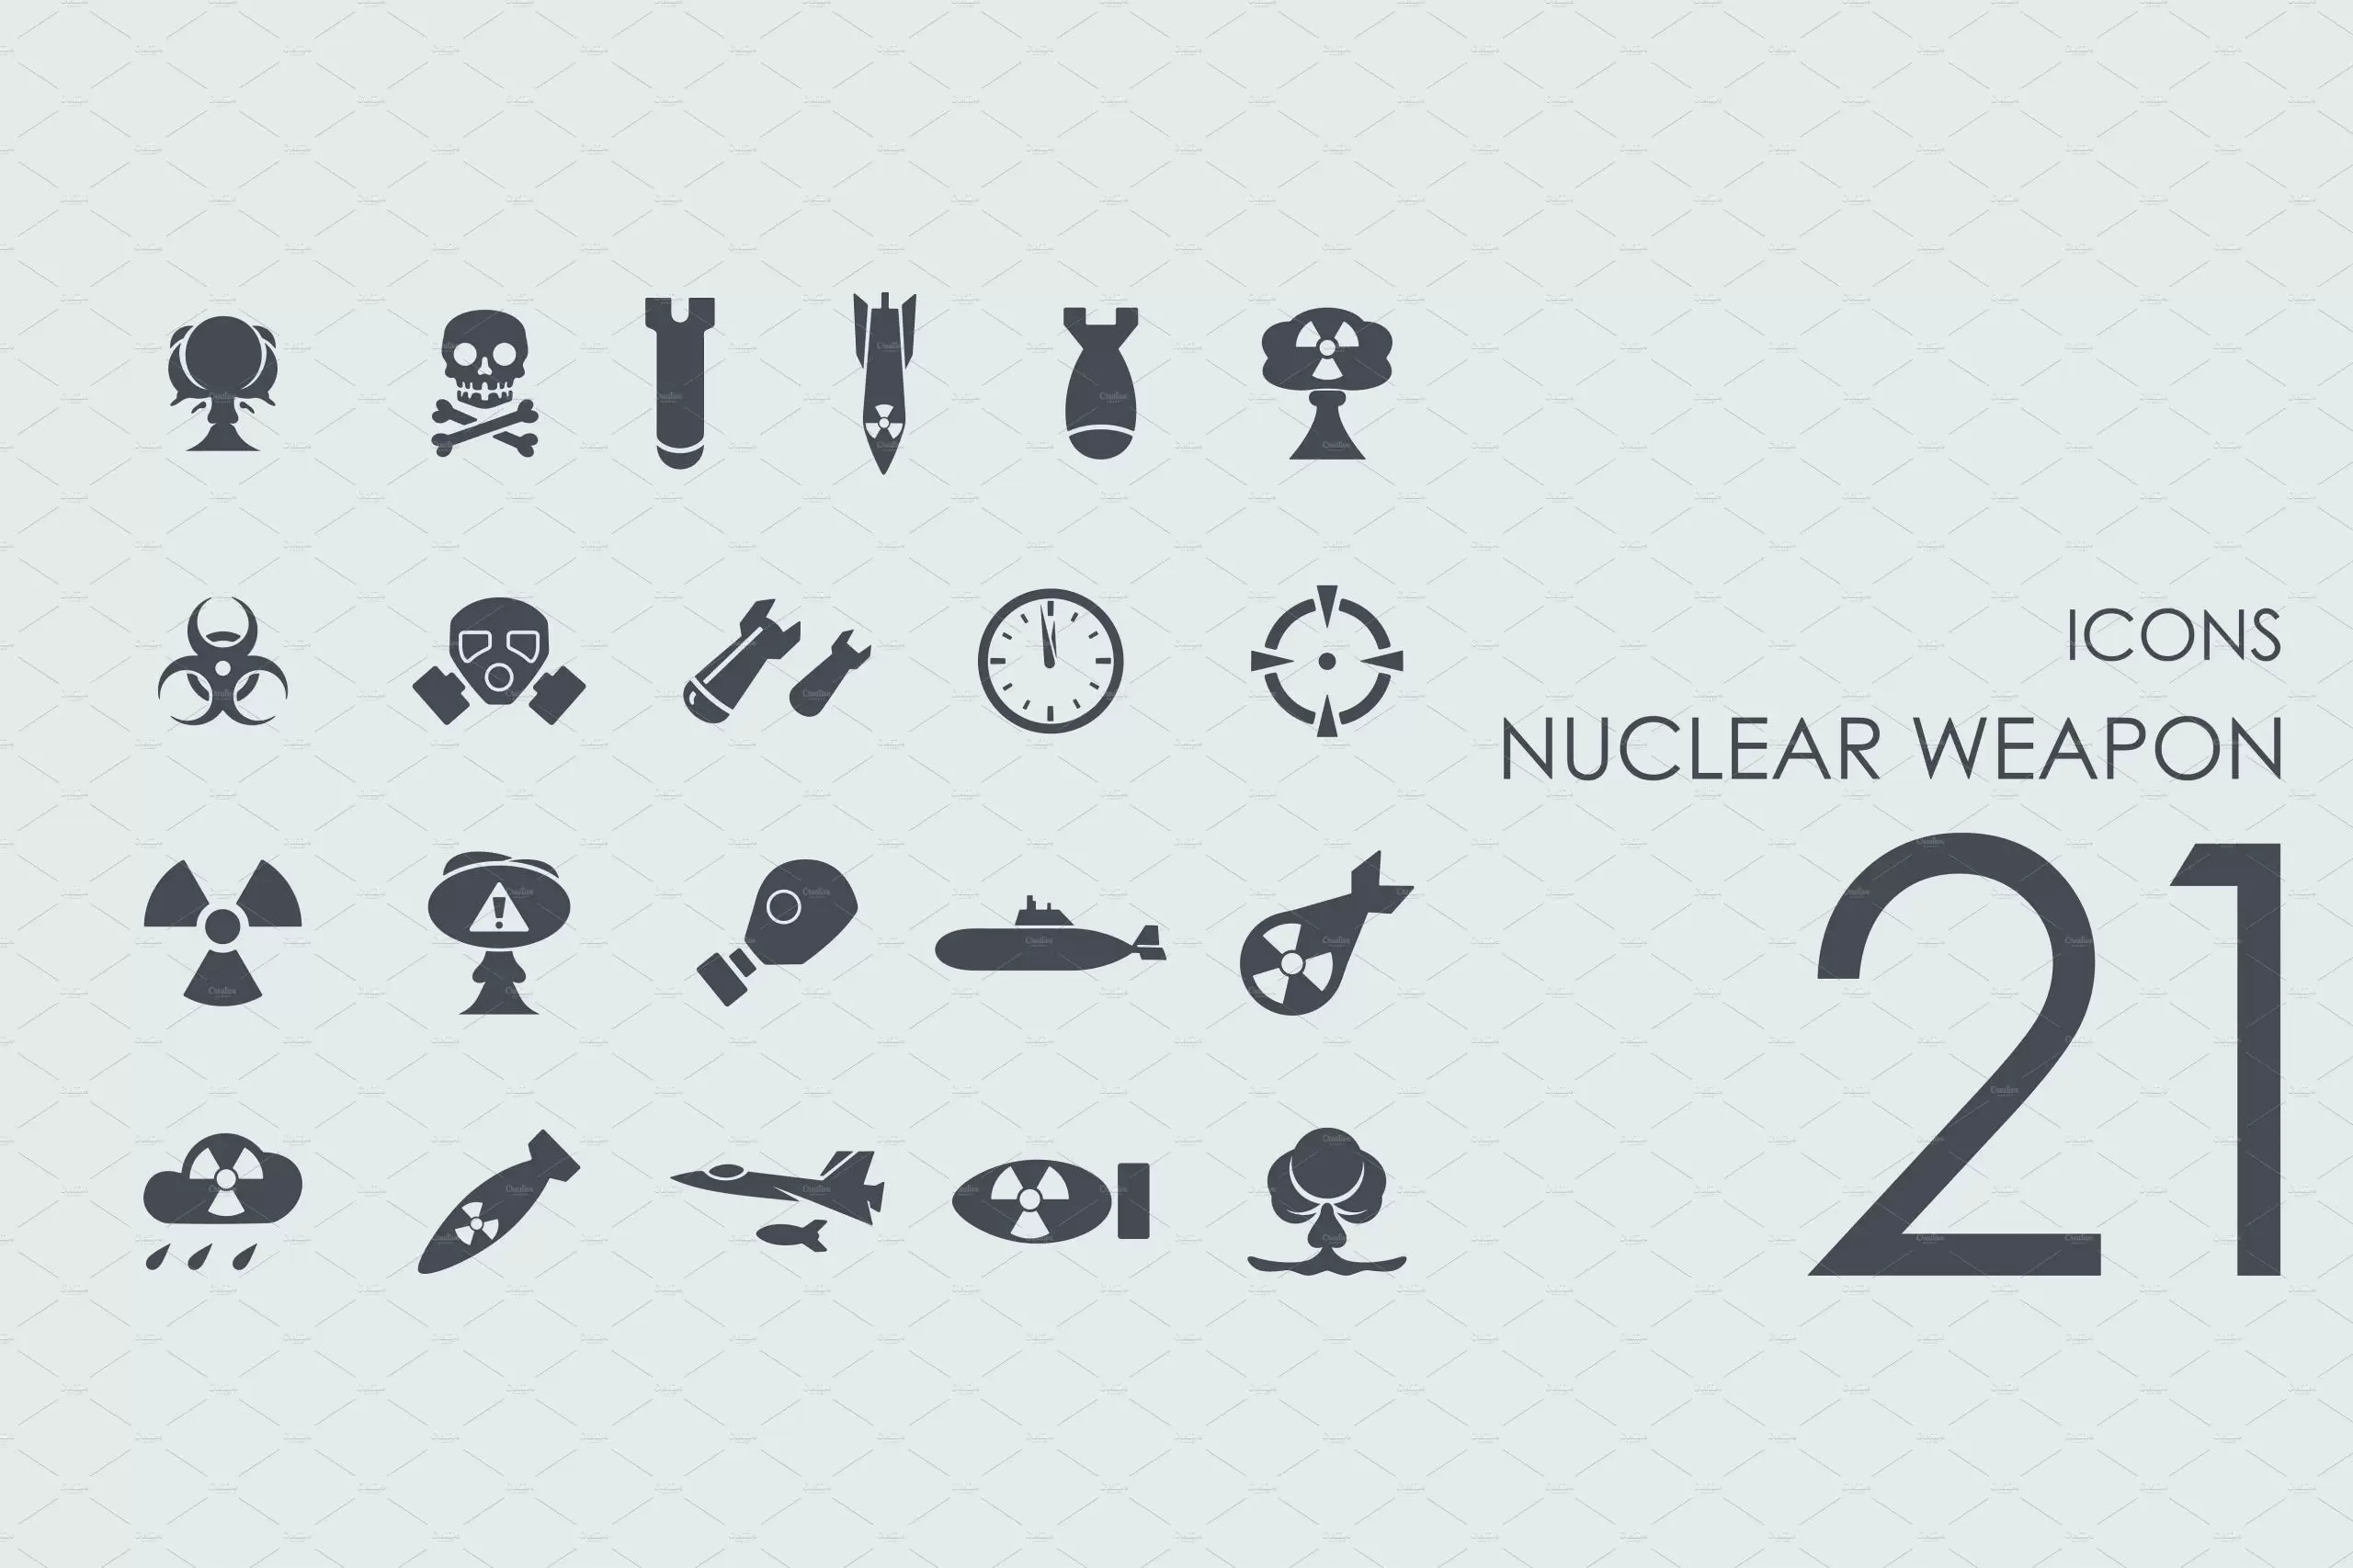 21个核武器图标素材 21 Nuclear Weapon icons插图